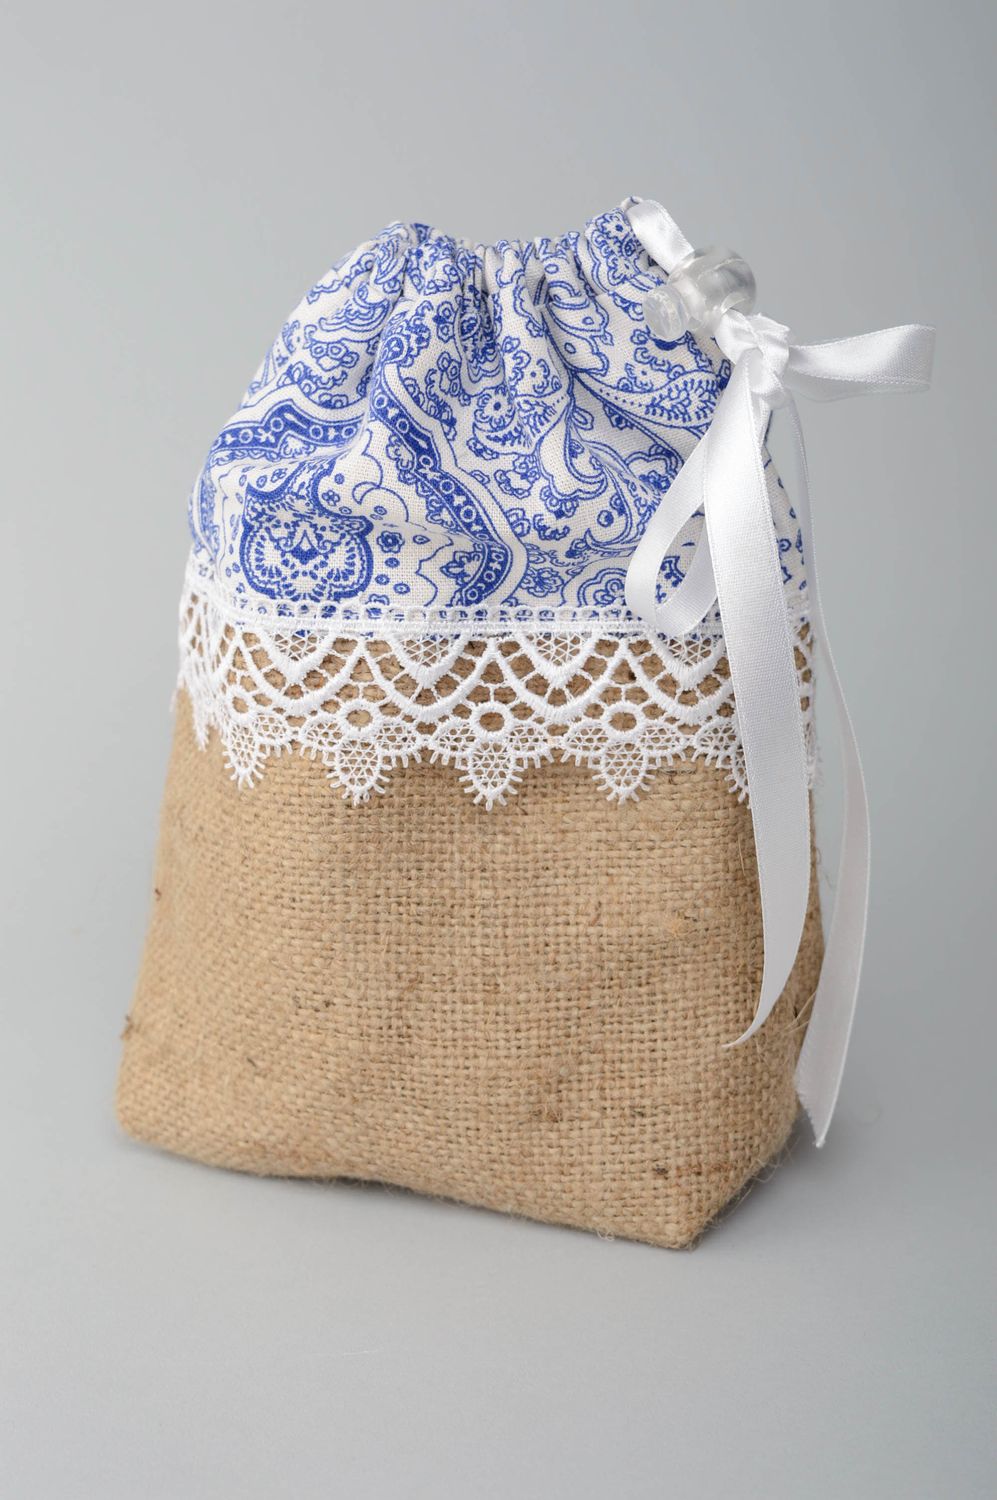 Текстильная косметичка сумка из мешковины с кружевами фото 1